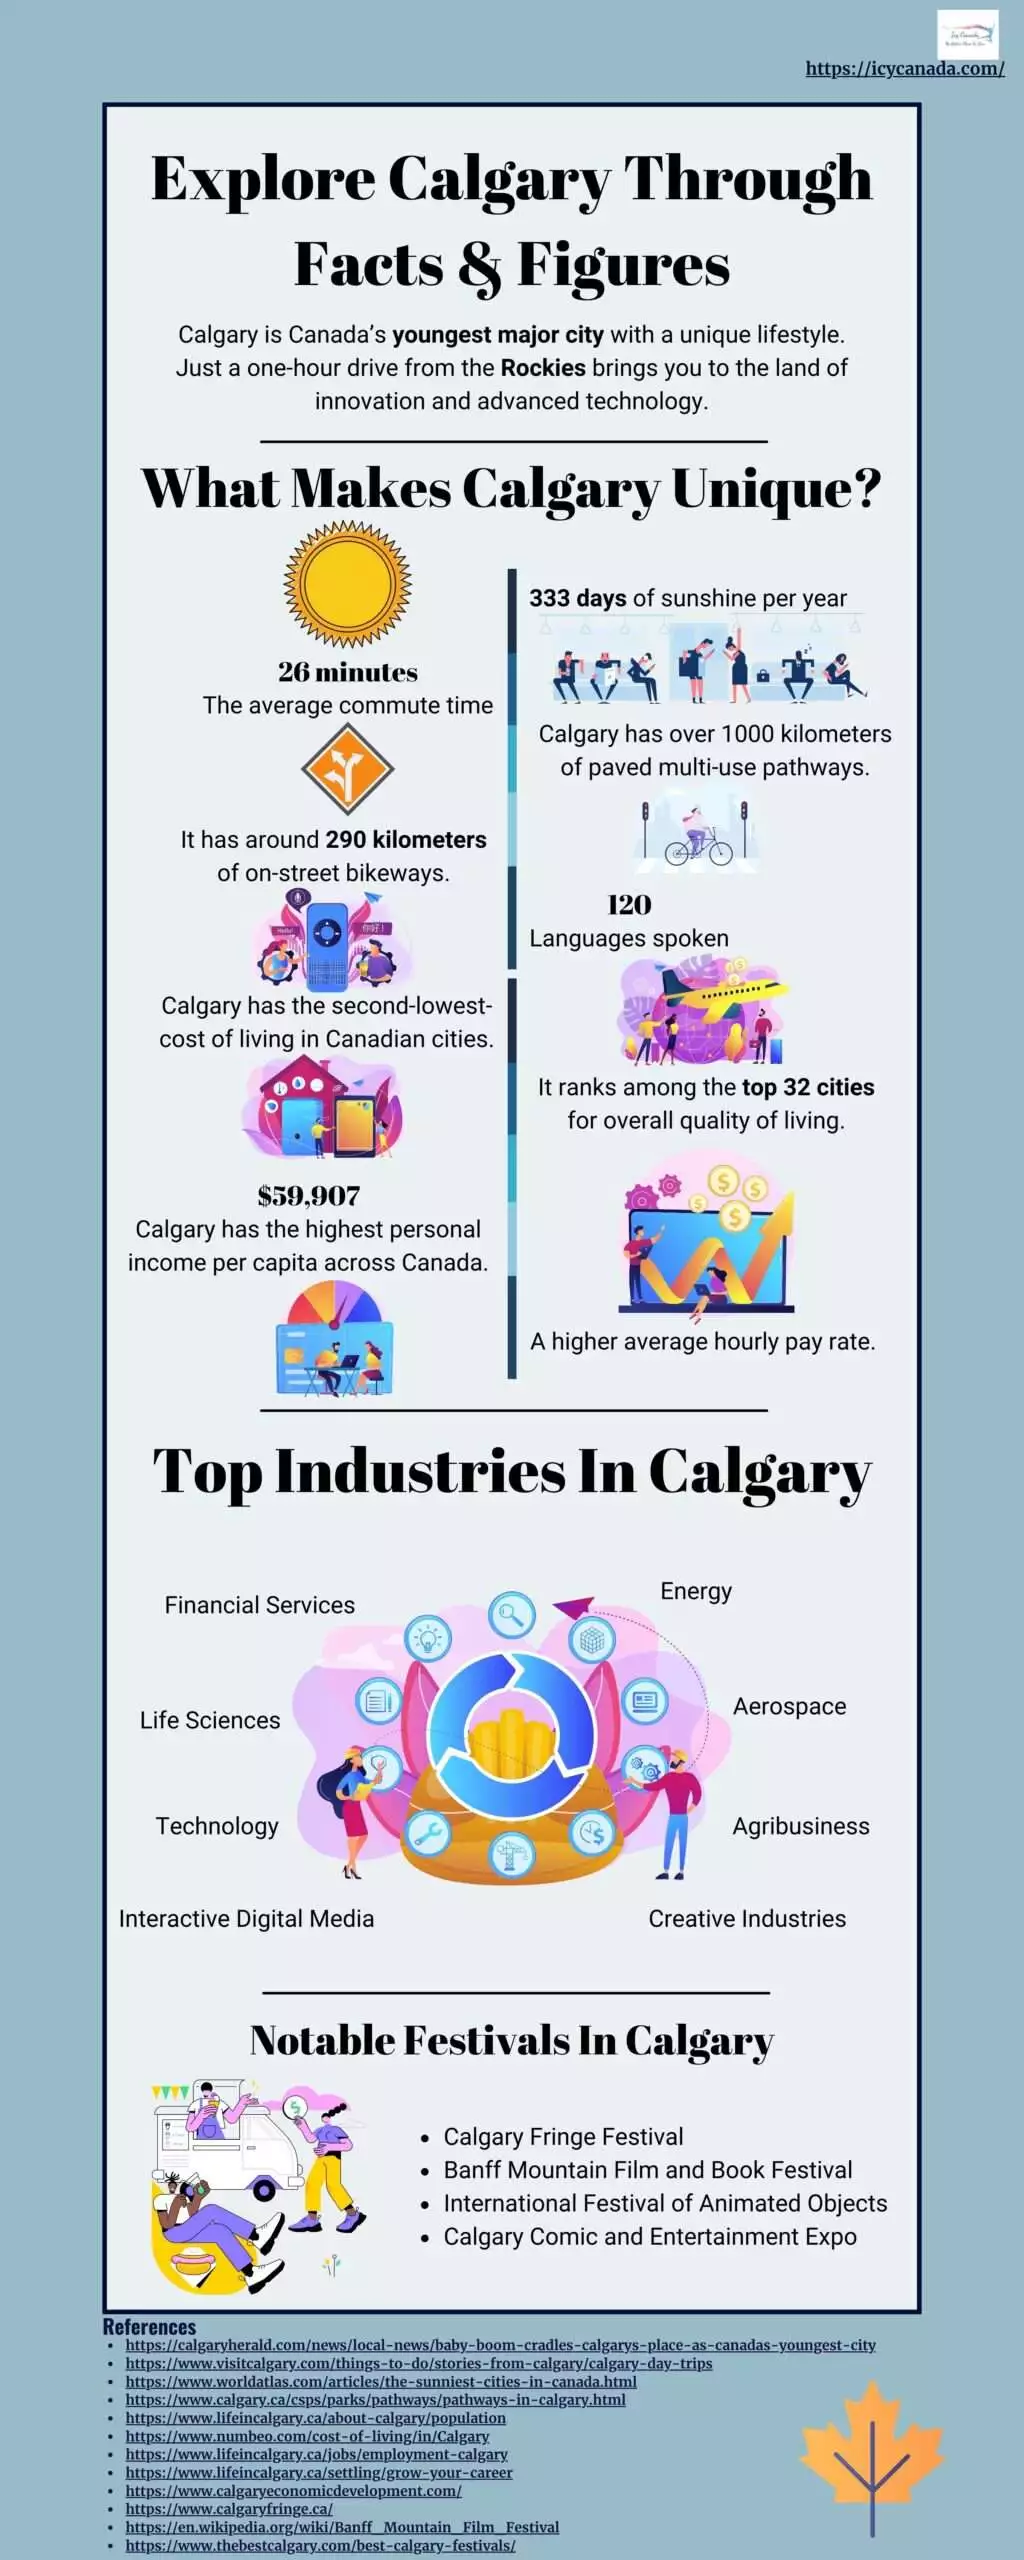 Explore Calgary Through Facts & Figures